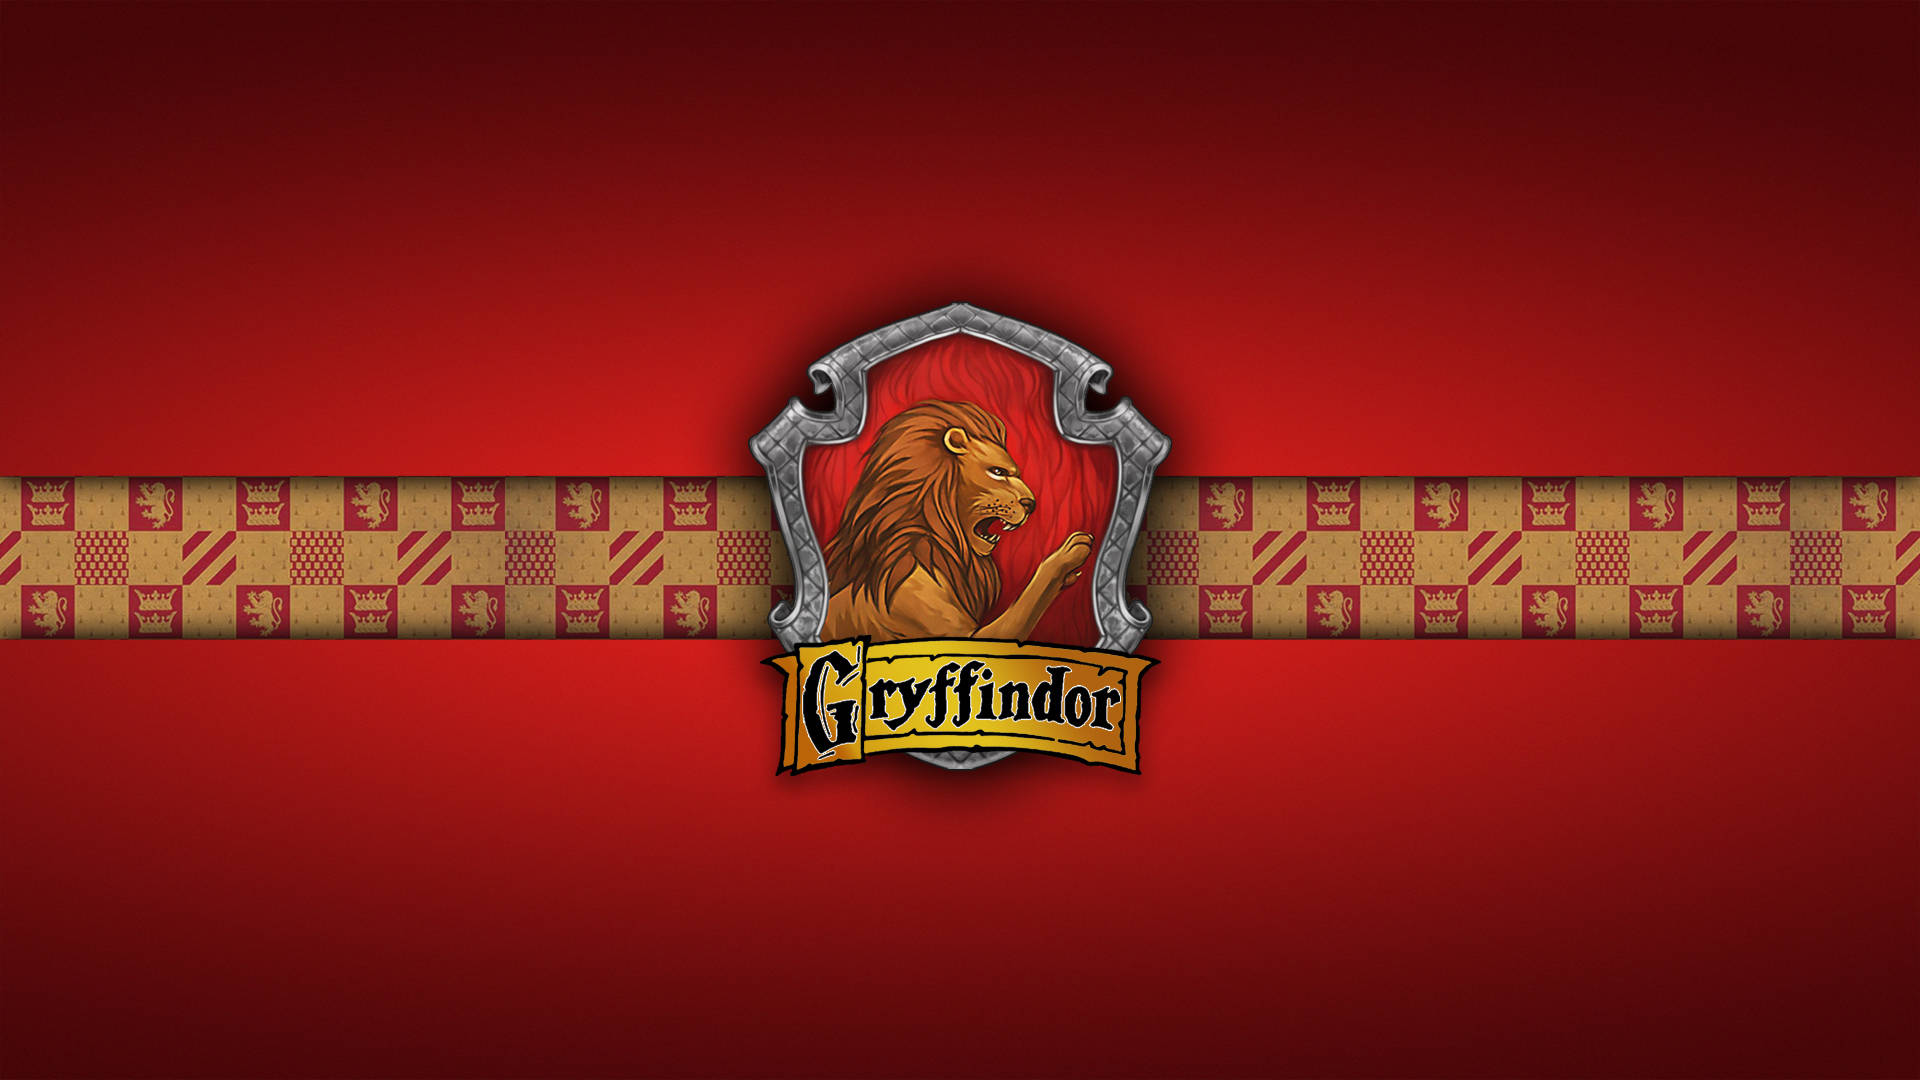 Nếu bạn là fan cuồng của Gryffindor, hãy thưởng thức bức ảnh hình nền Gryffindor đọc lớp thú vị này. Hãy tìm kiếm sự can đảm và lòng trung thành đích thực với nhóm của Harry Potter.